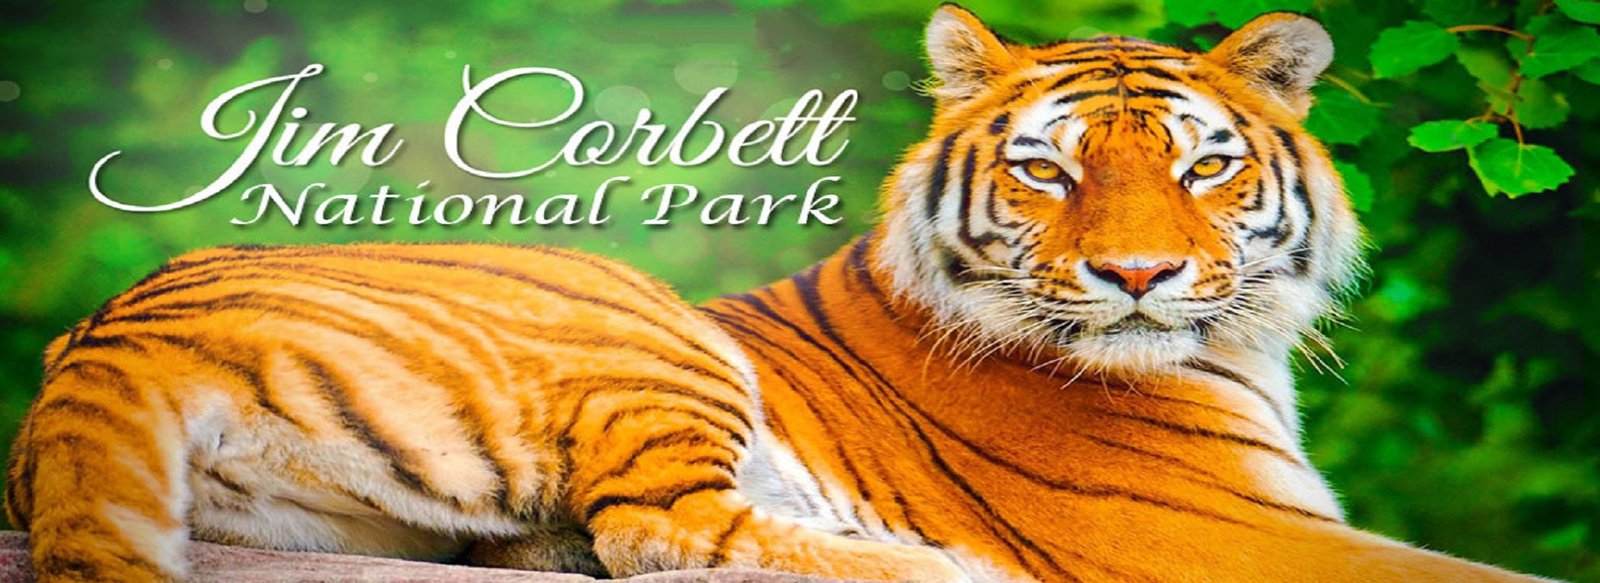 Jim Corbett National Park- Complete Travel Tips